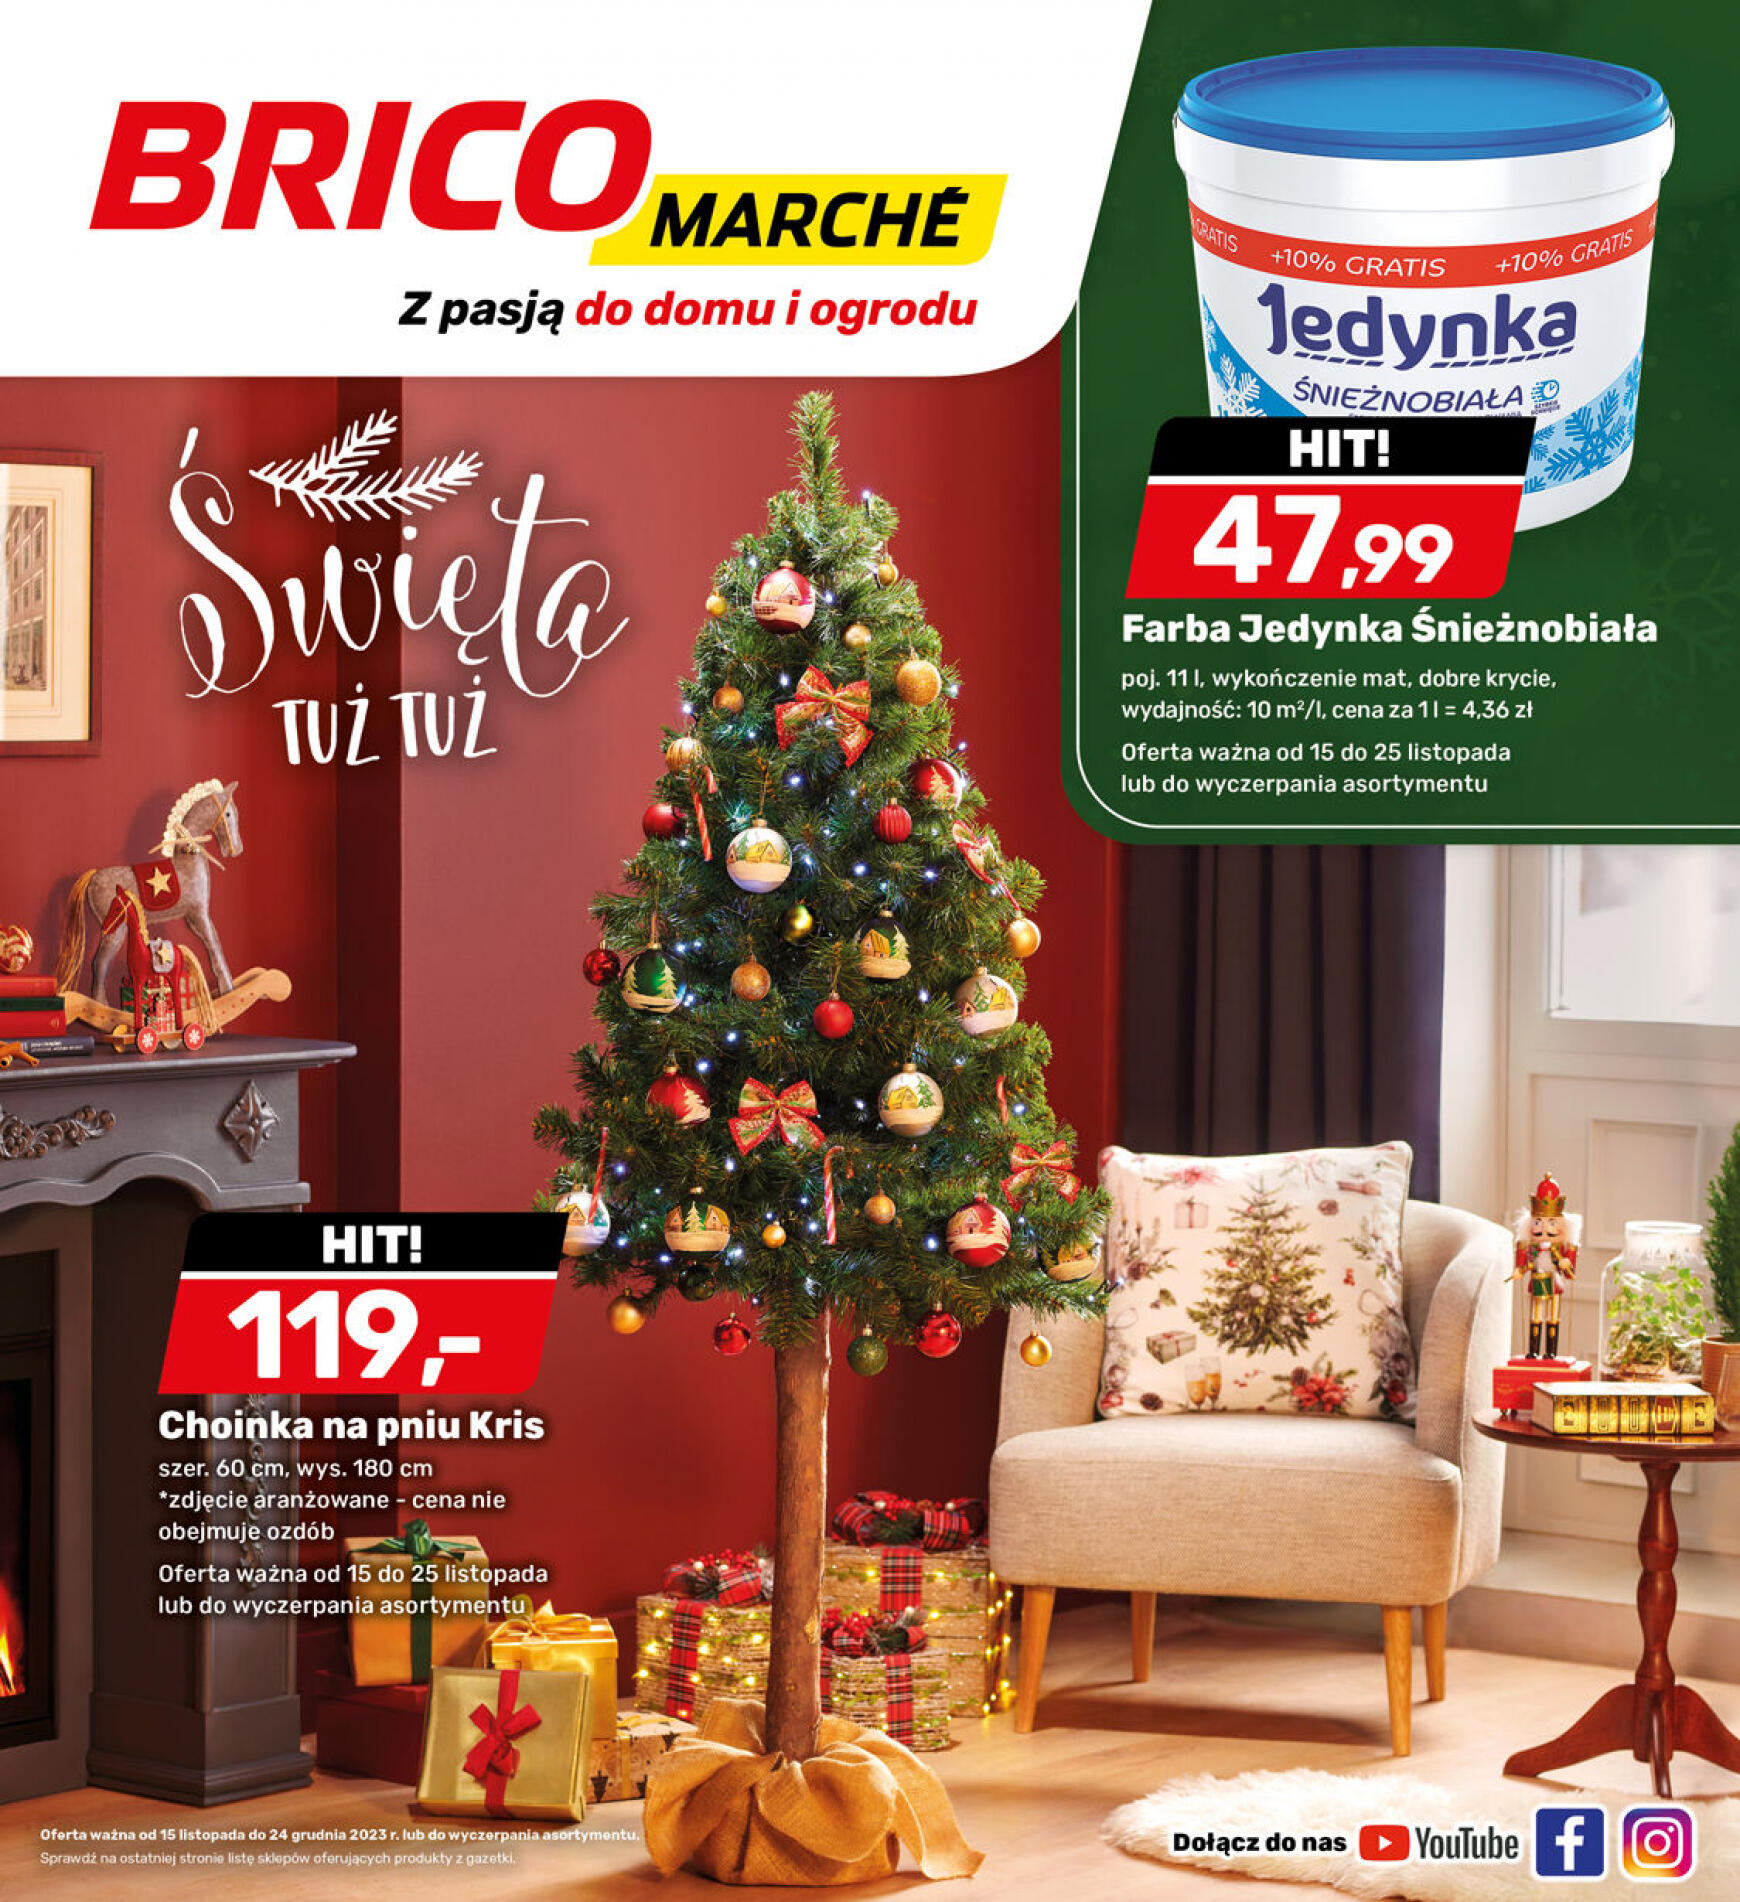 brico-marche - - Bricomarche - page: 12